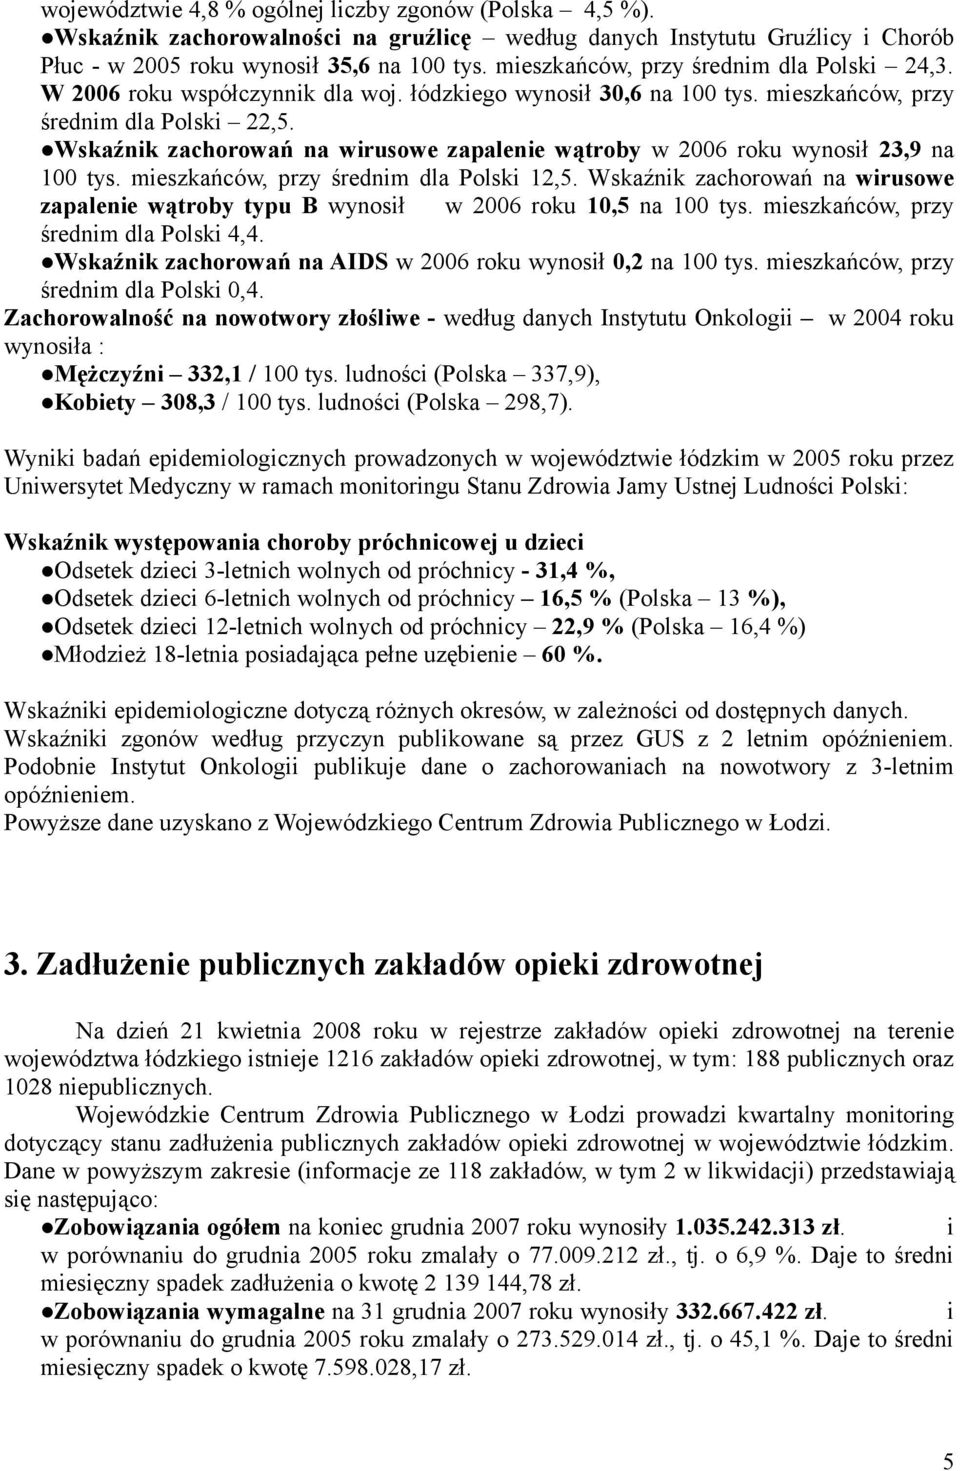 Wskaźnik zachorowań na wirusowe zapalenie wątroby w 2006 roku wynosił 23,9 na 100 tys. mieszkańców, przy średnim dla Polski 12,5.